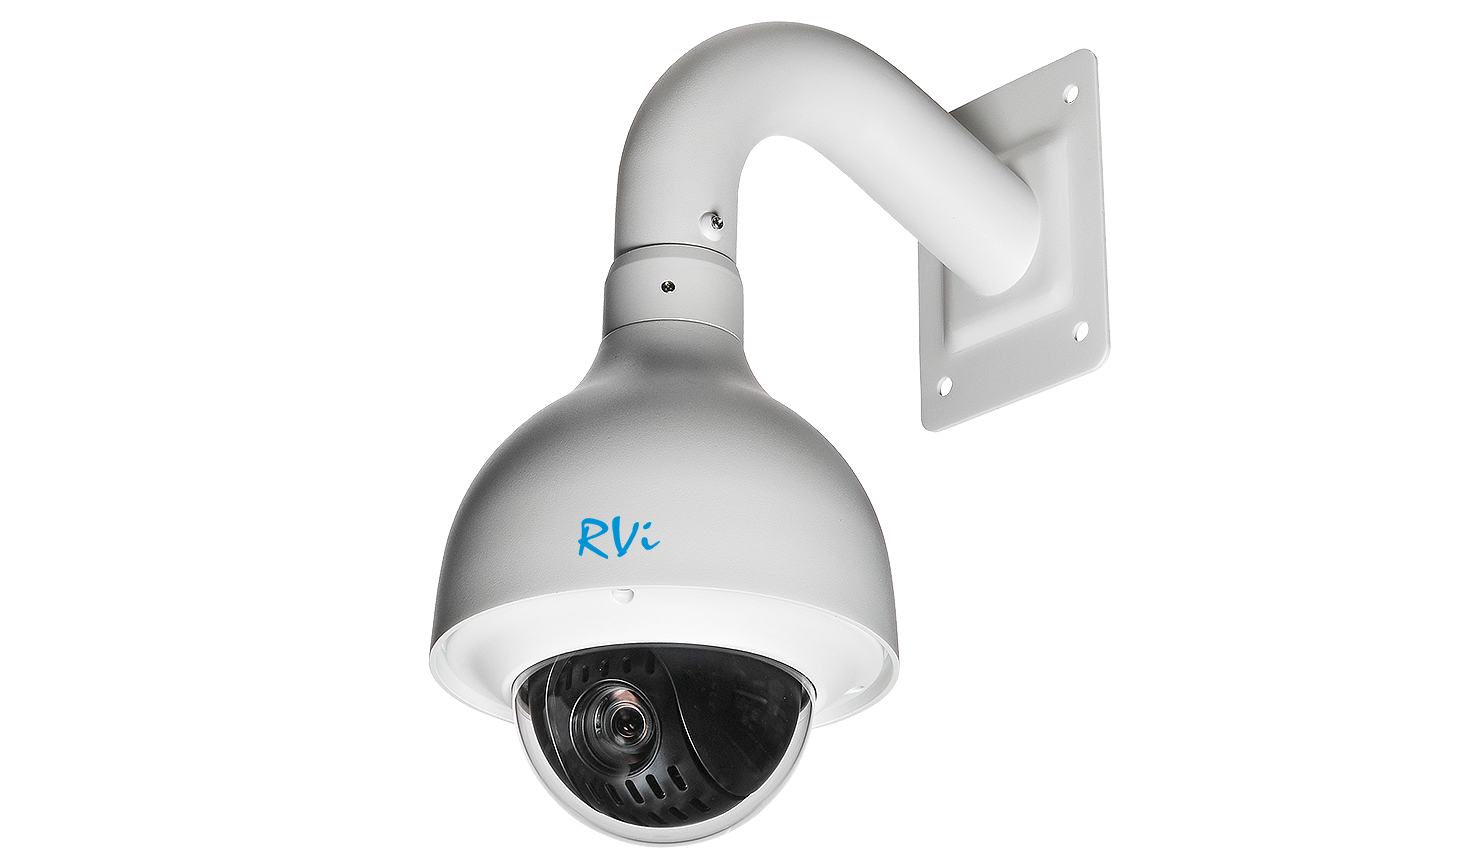 RVi-1NCZX20712 (5.3-64) - купить в интернет магазине с доставкой, цены, описание, характеристики, отзывы